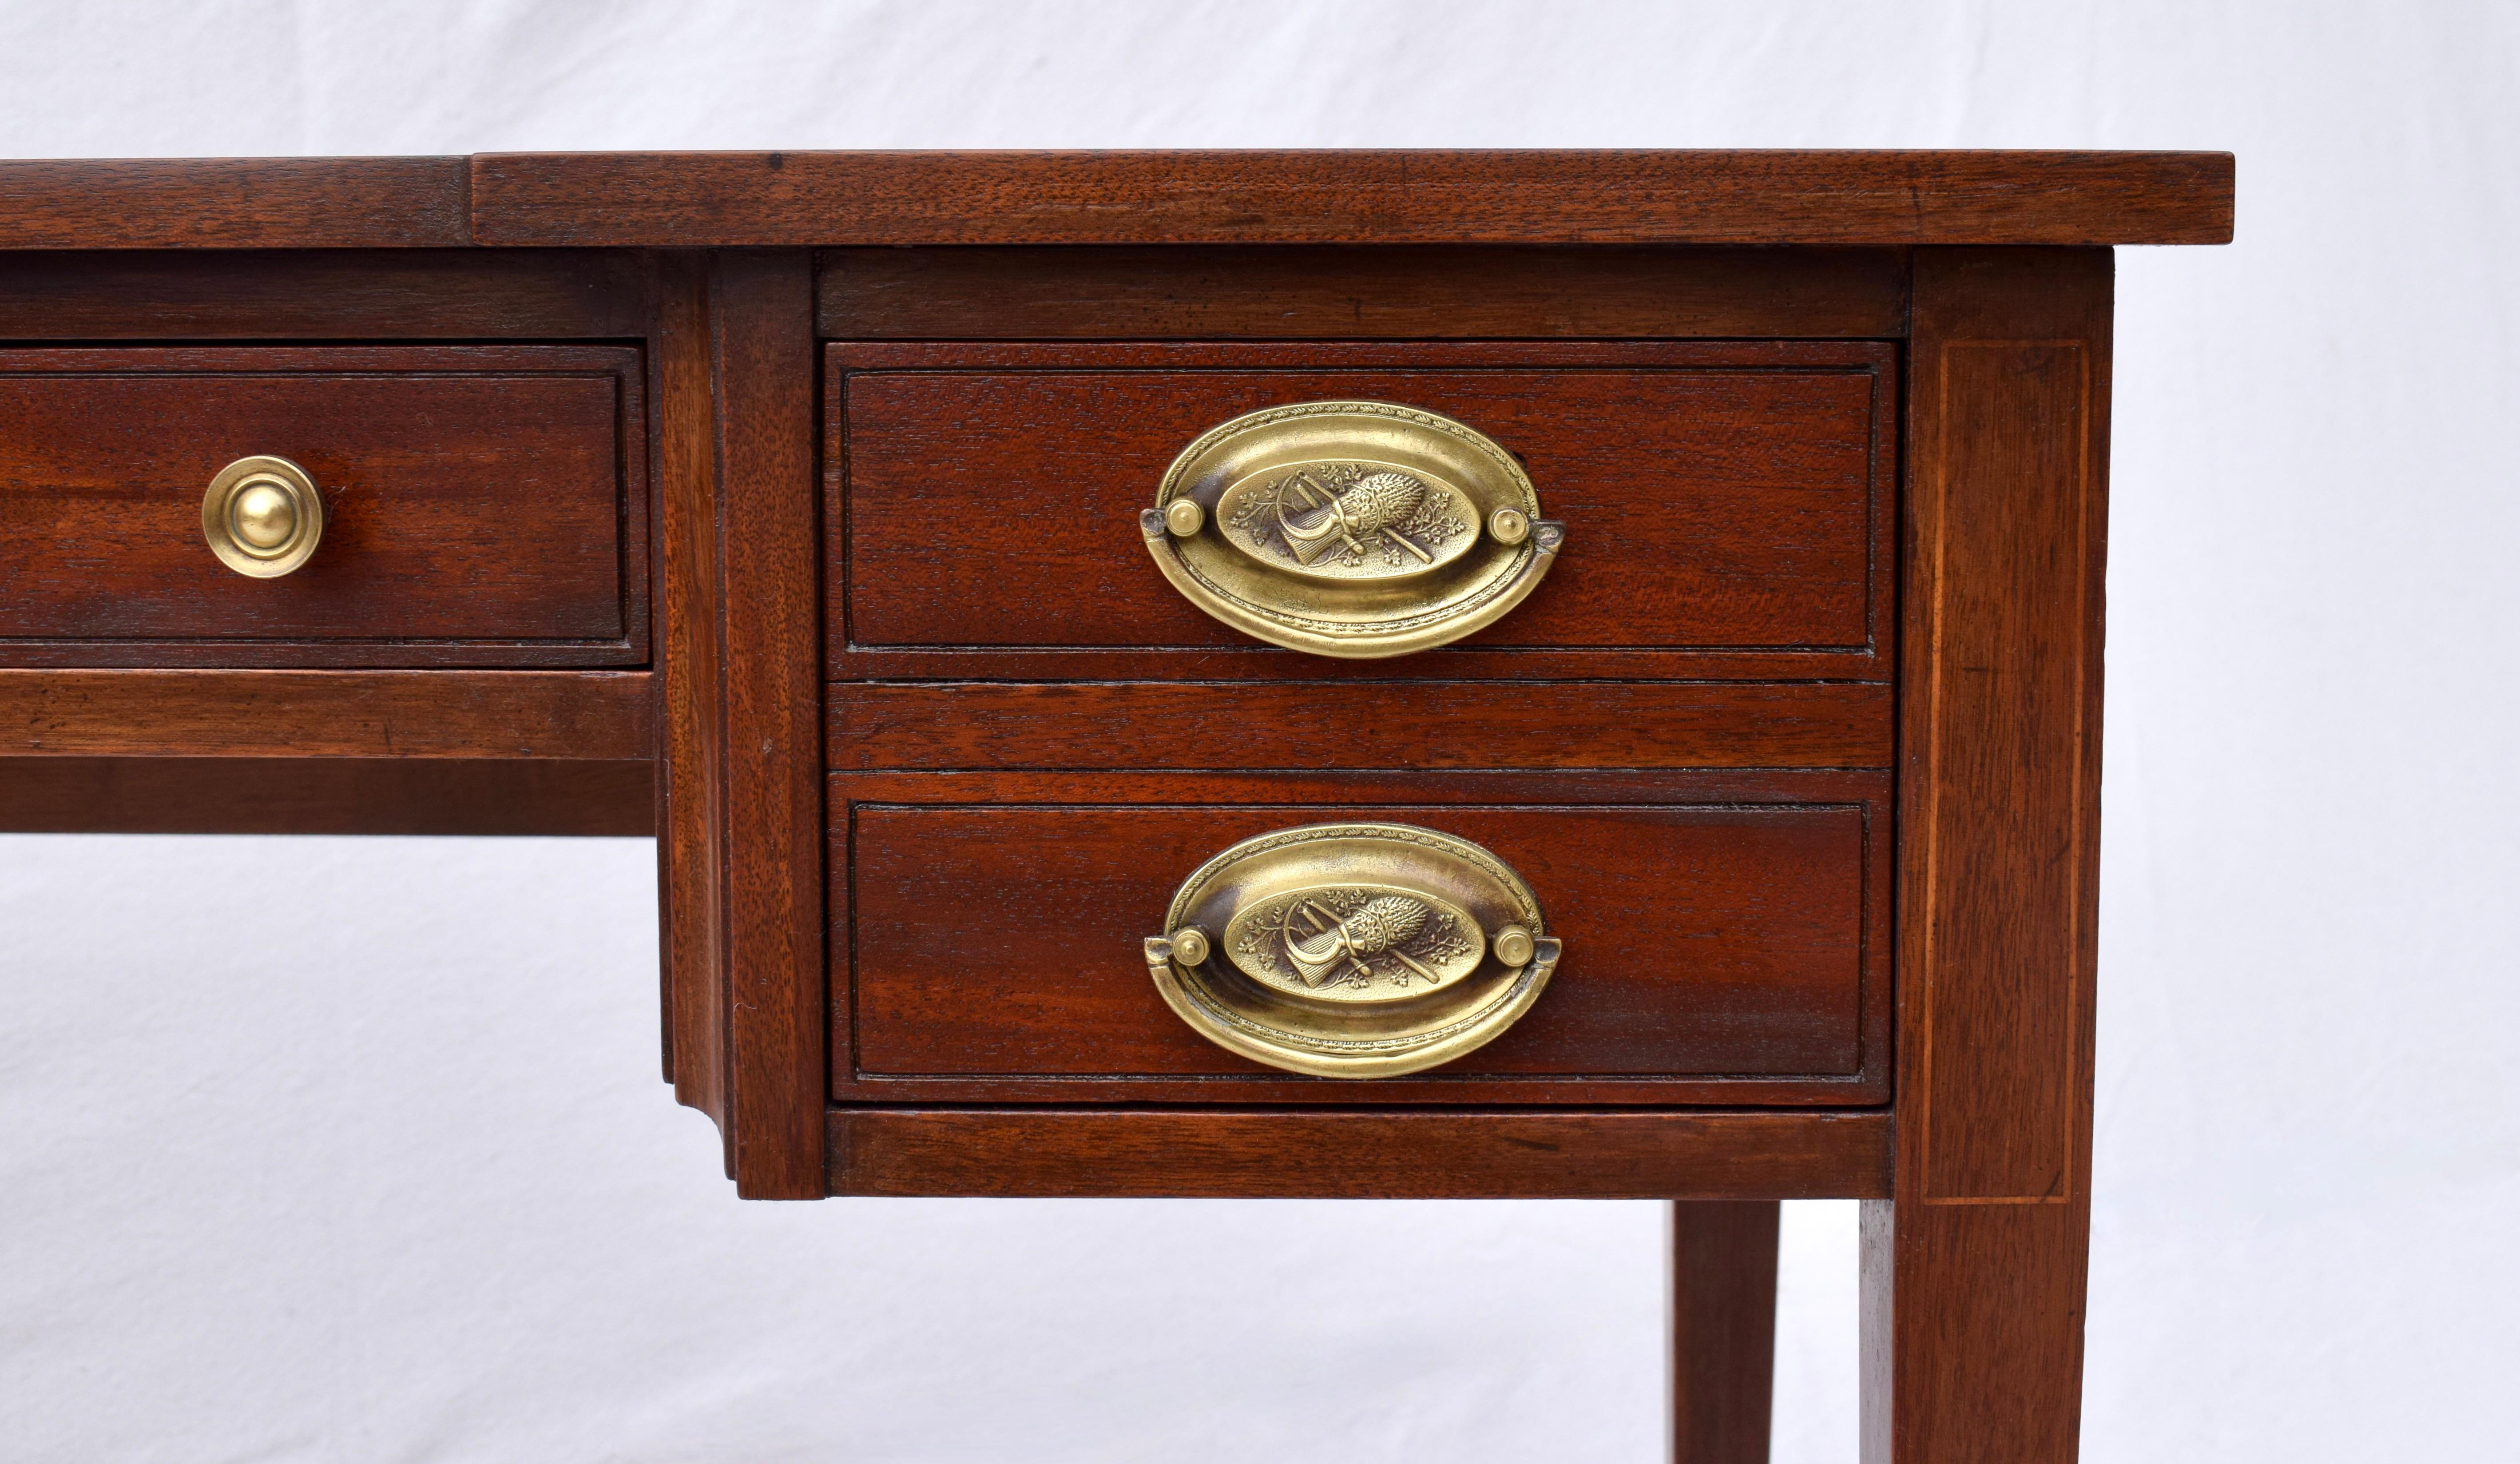 Charak Furniture Table à écrire à cinq tiroirs en acajou de style Hepplewhite anglais, avec de remarquables cuivres ovales, une serrure et une clé en état de marche, reposant sur des pieds fuselés et des roulettes. 